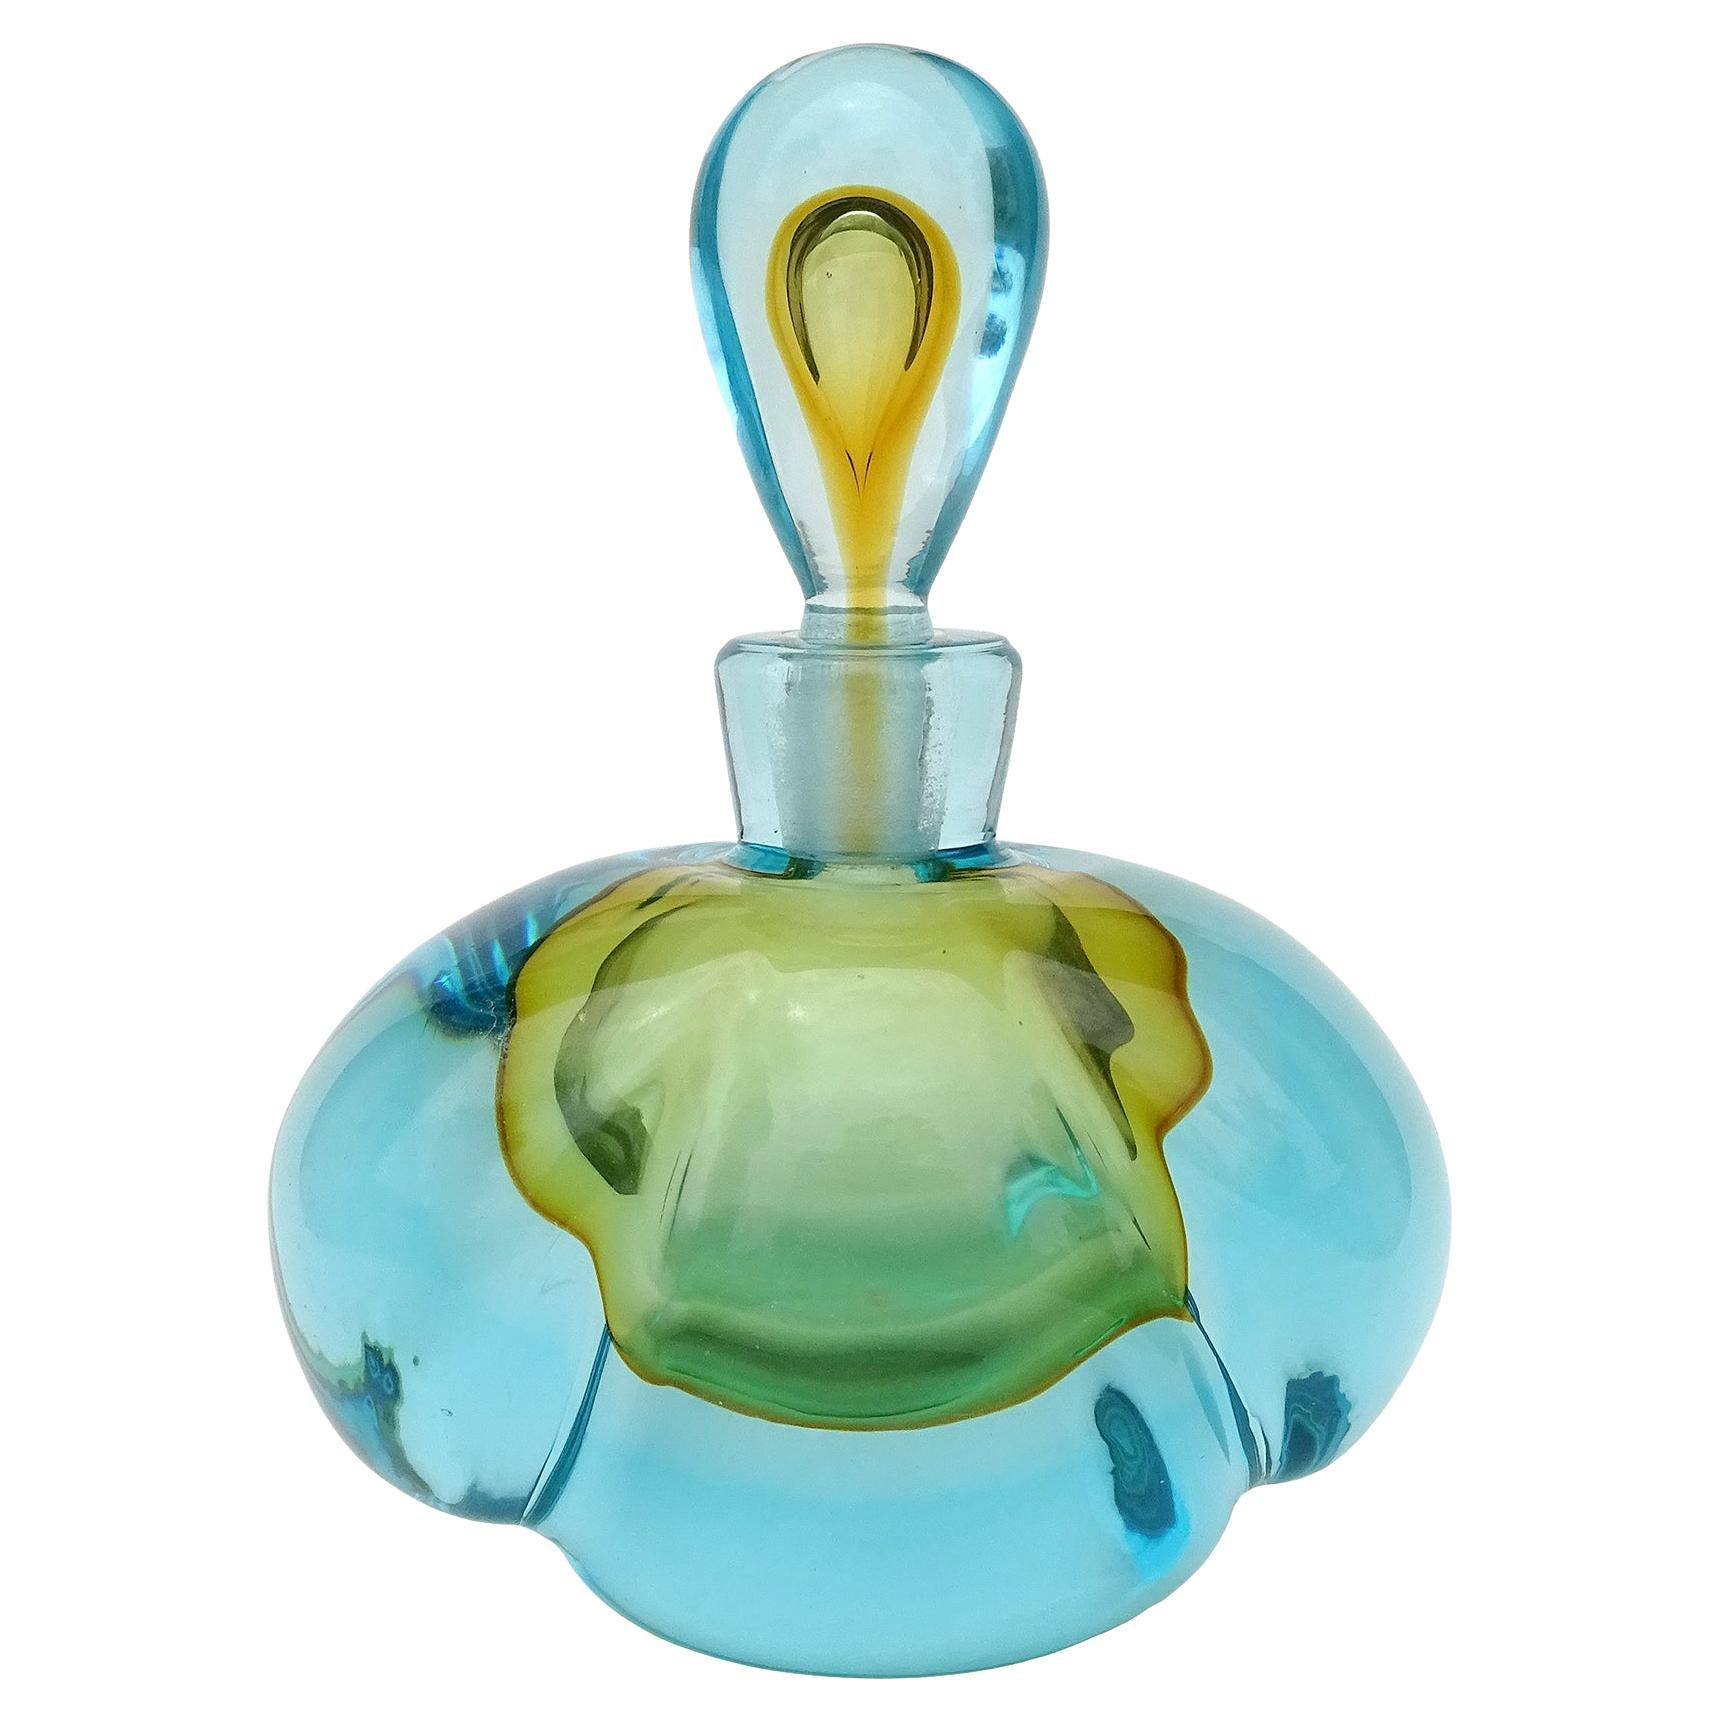 Barbini Murano Sommerso Blue Orange Italian Art Glass Perfume Cologne Bottle